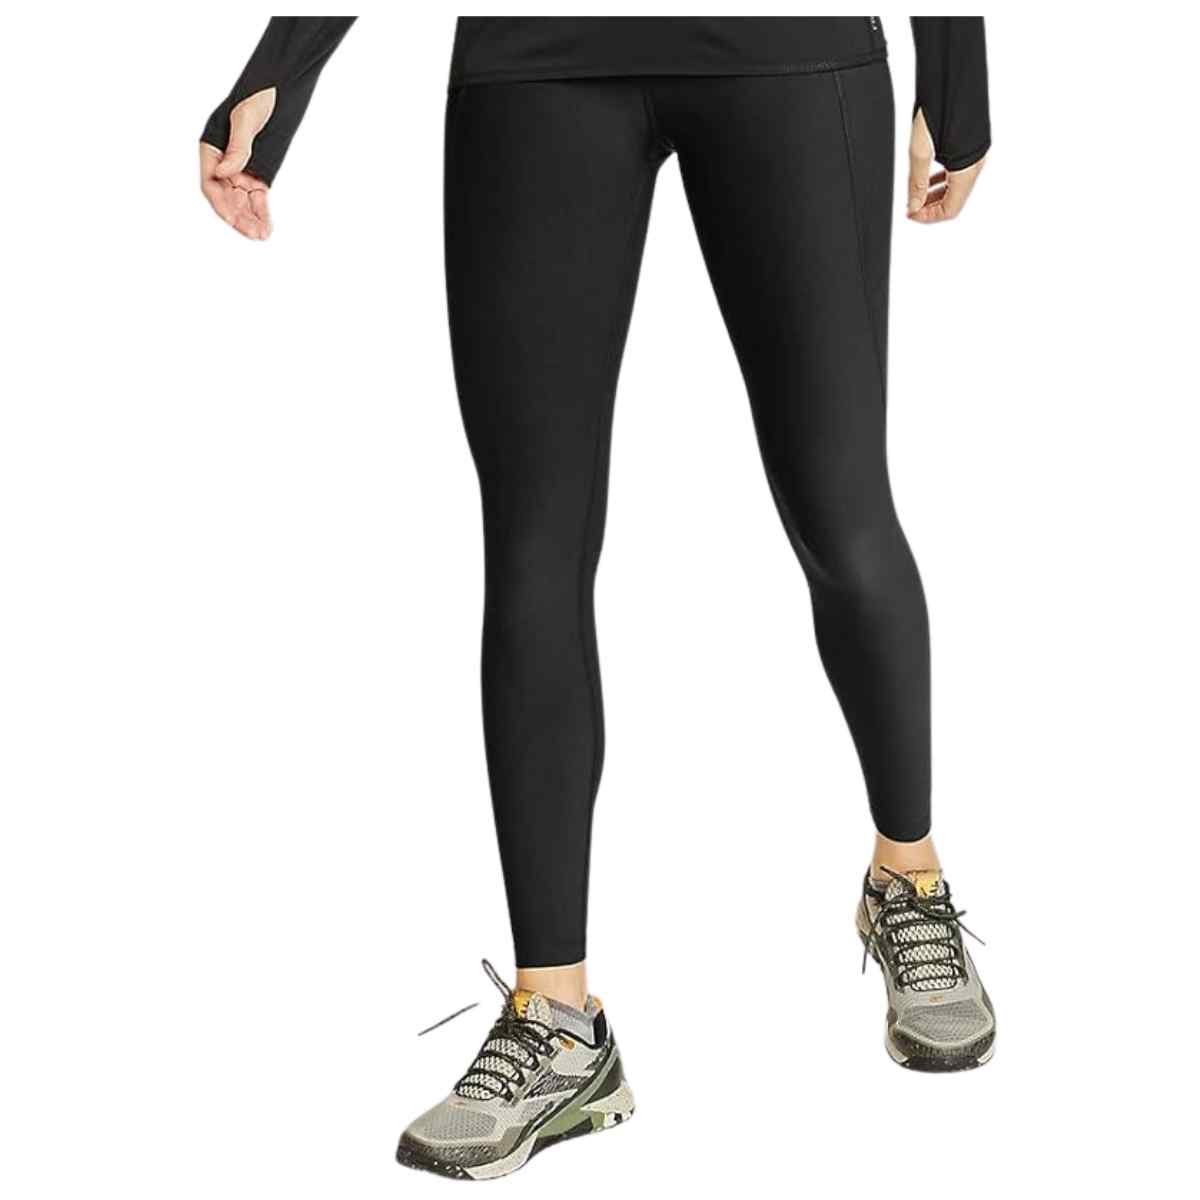  Eddie Bauer Women's Trail Tight Knee Shorts, Black, X